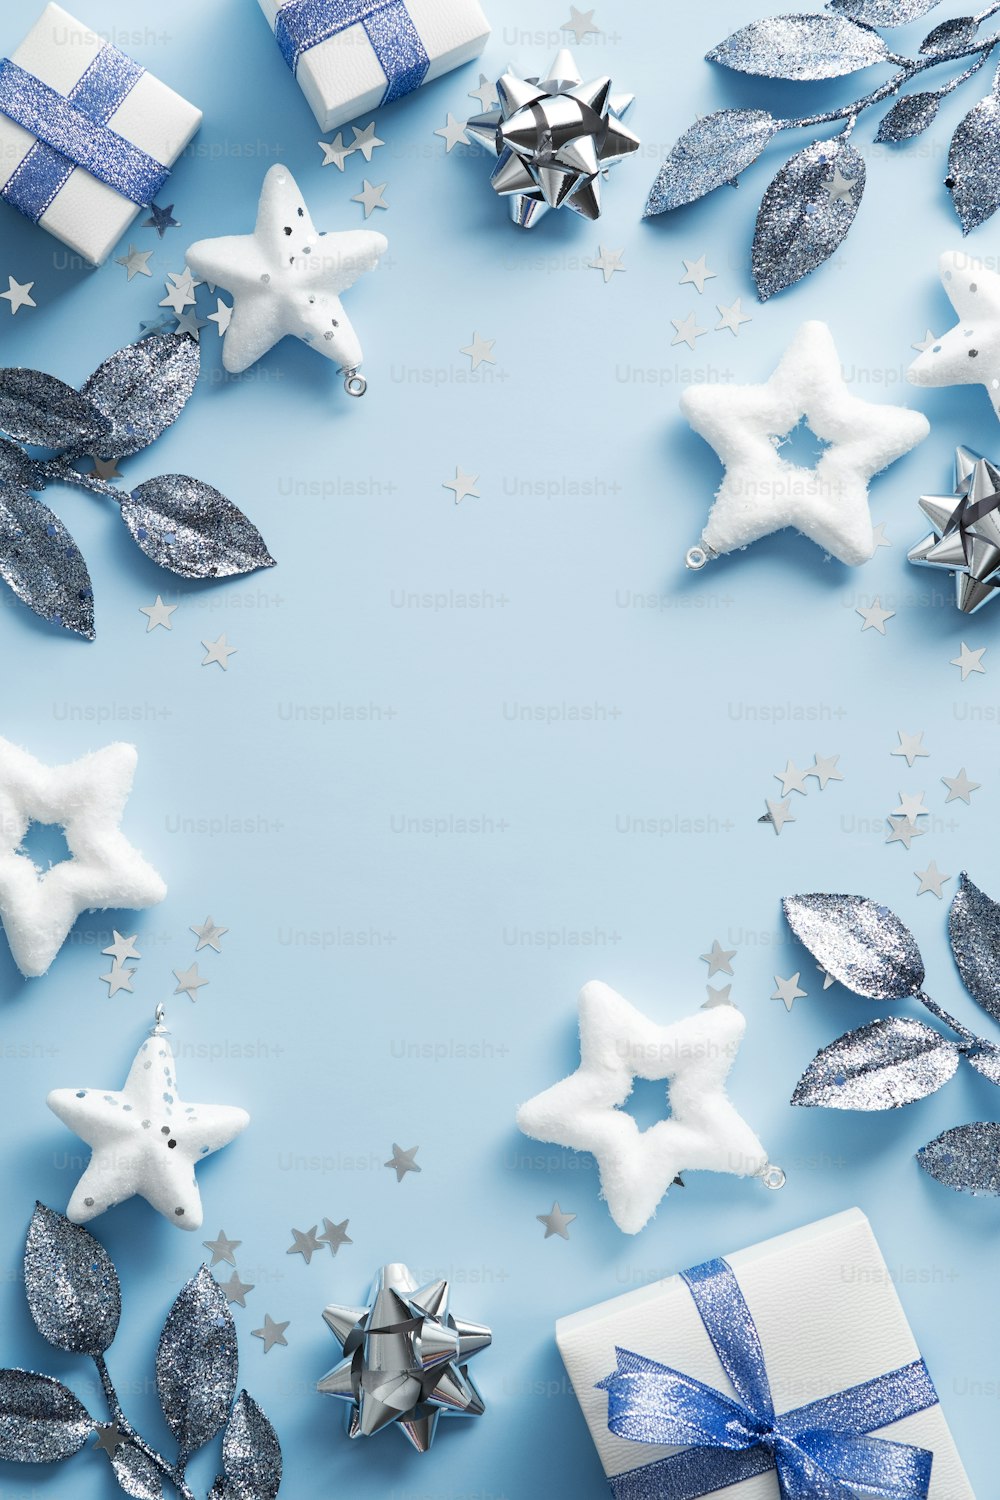 幸せなクリスマスの日の背景。エレガントなクリスマスの装飾、星、青いテーブルの上の枝。新年の縦型バナーデザイン、クリスマスポスターのモックアップ。フラットレイ、上面図。